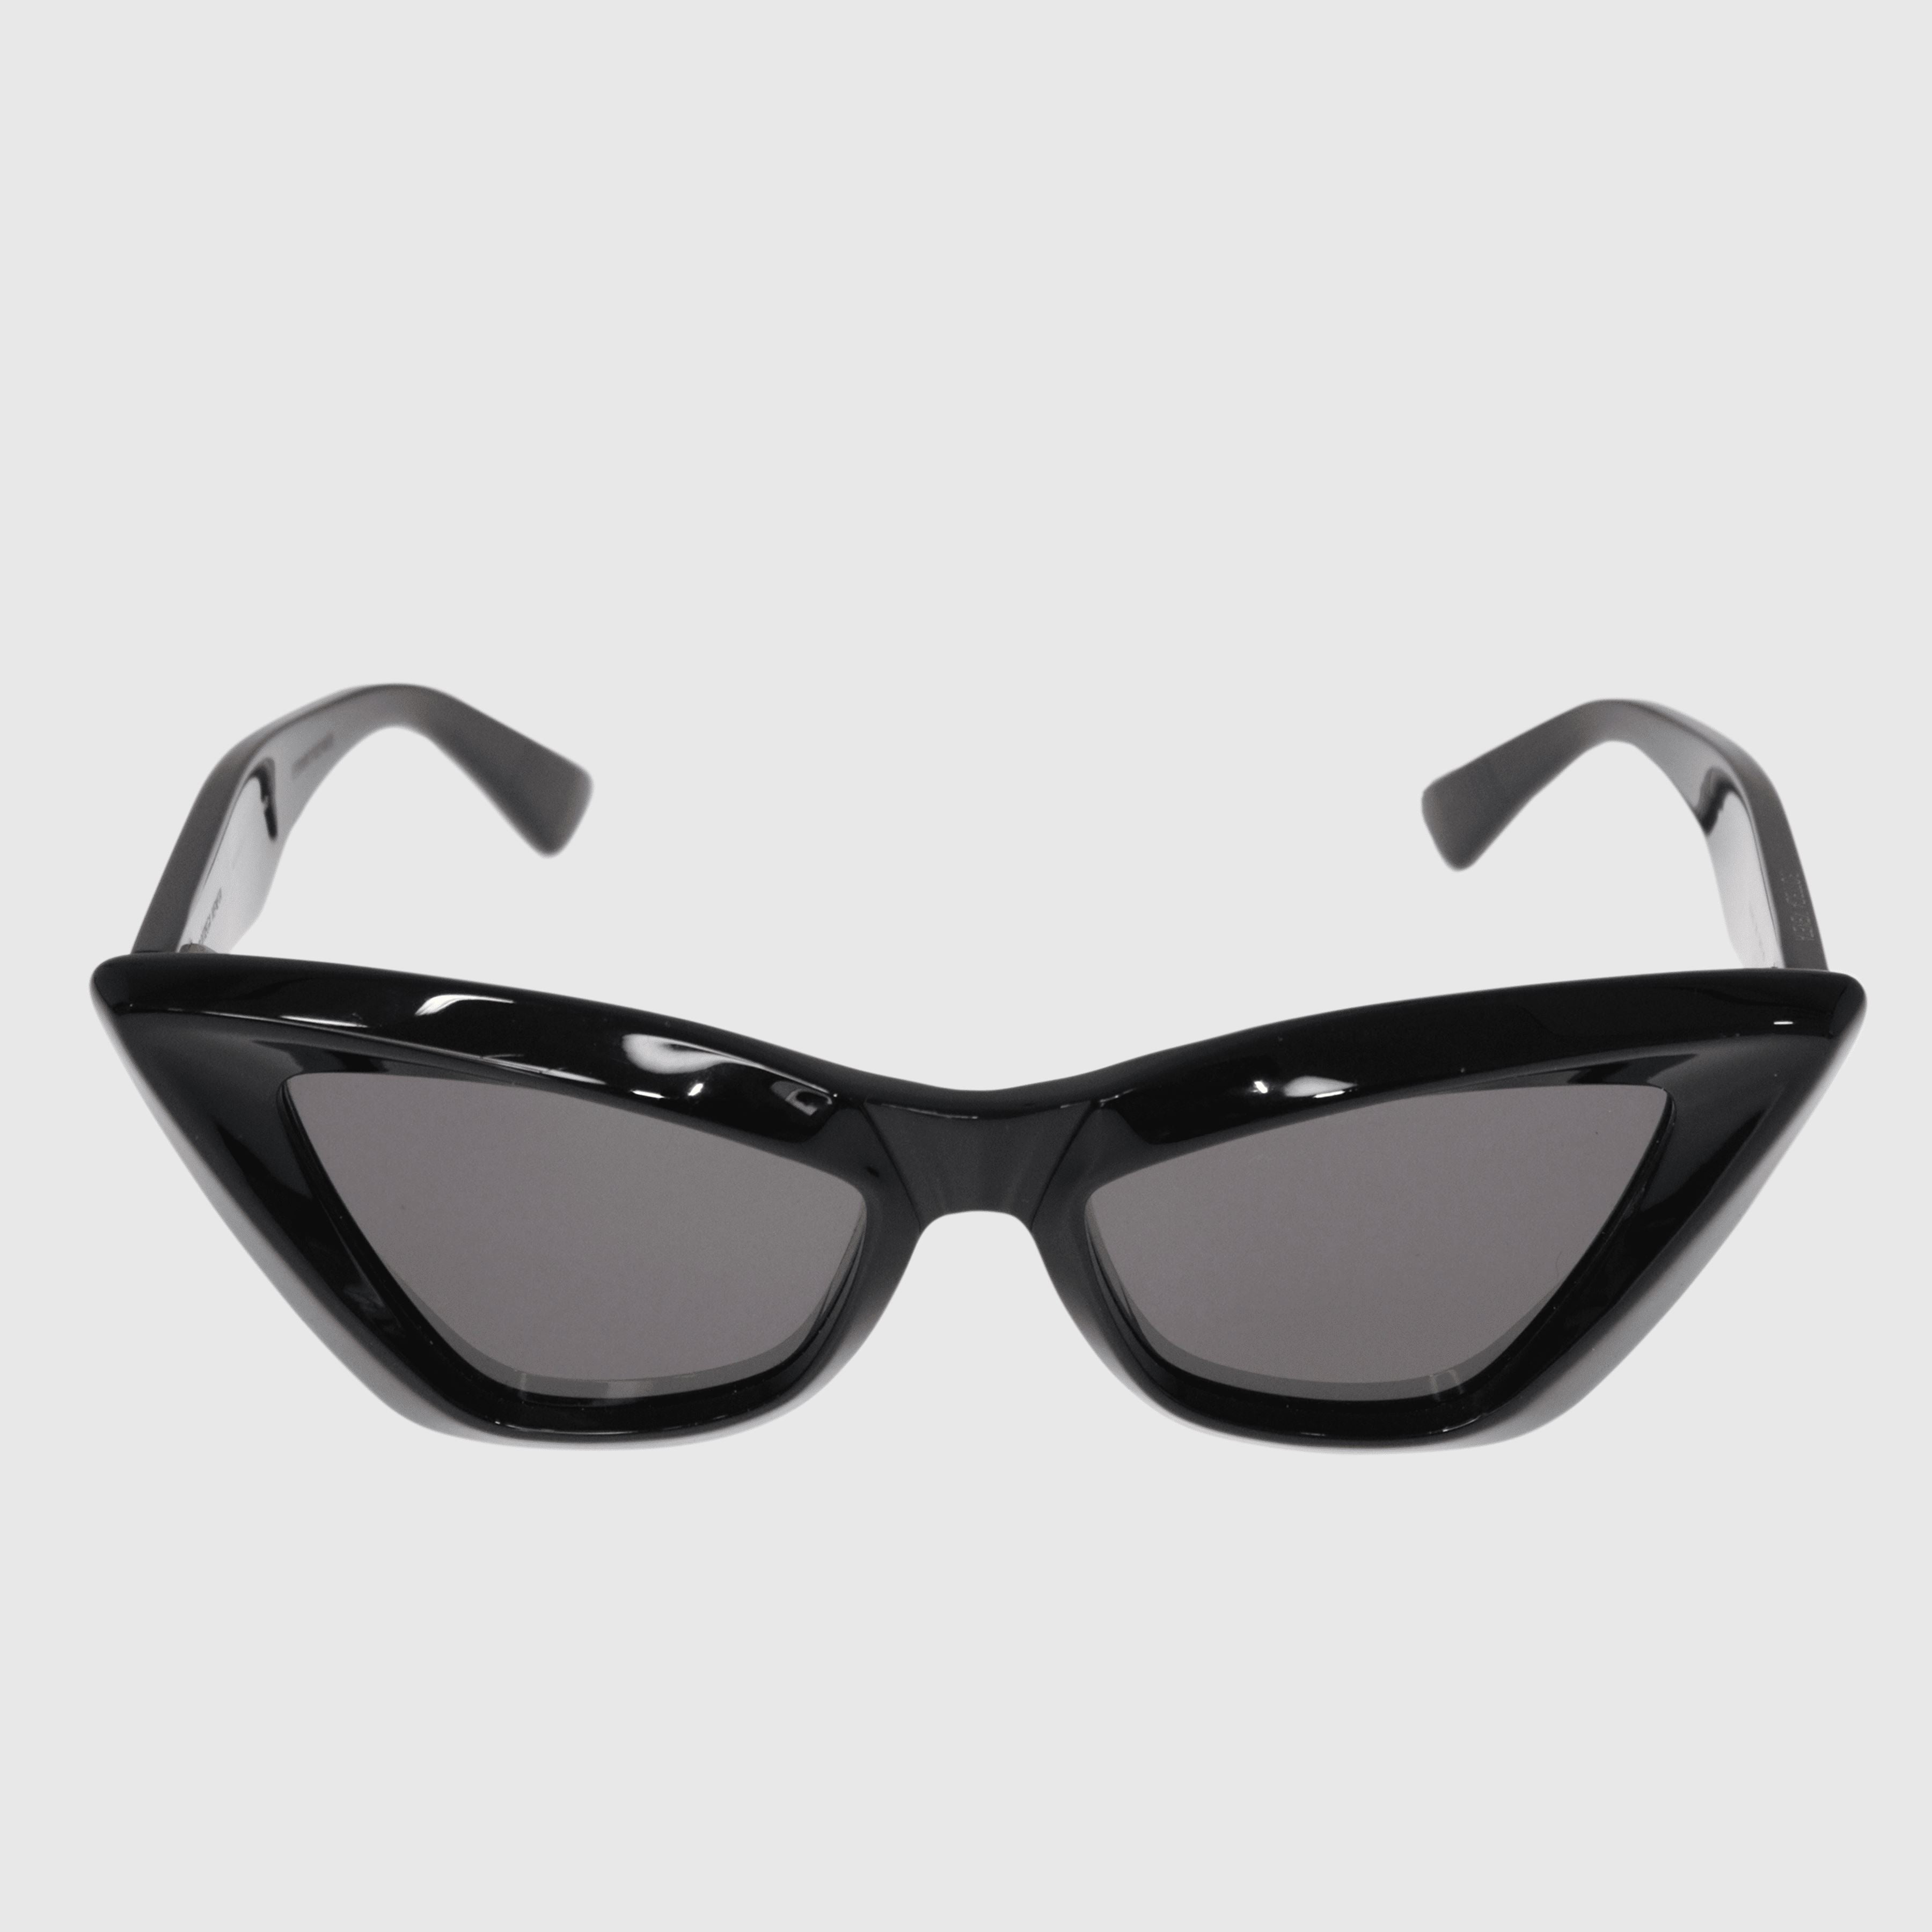 Black Cat Eye Sunglasses - BV1101S Accessories Bottega Veneta 